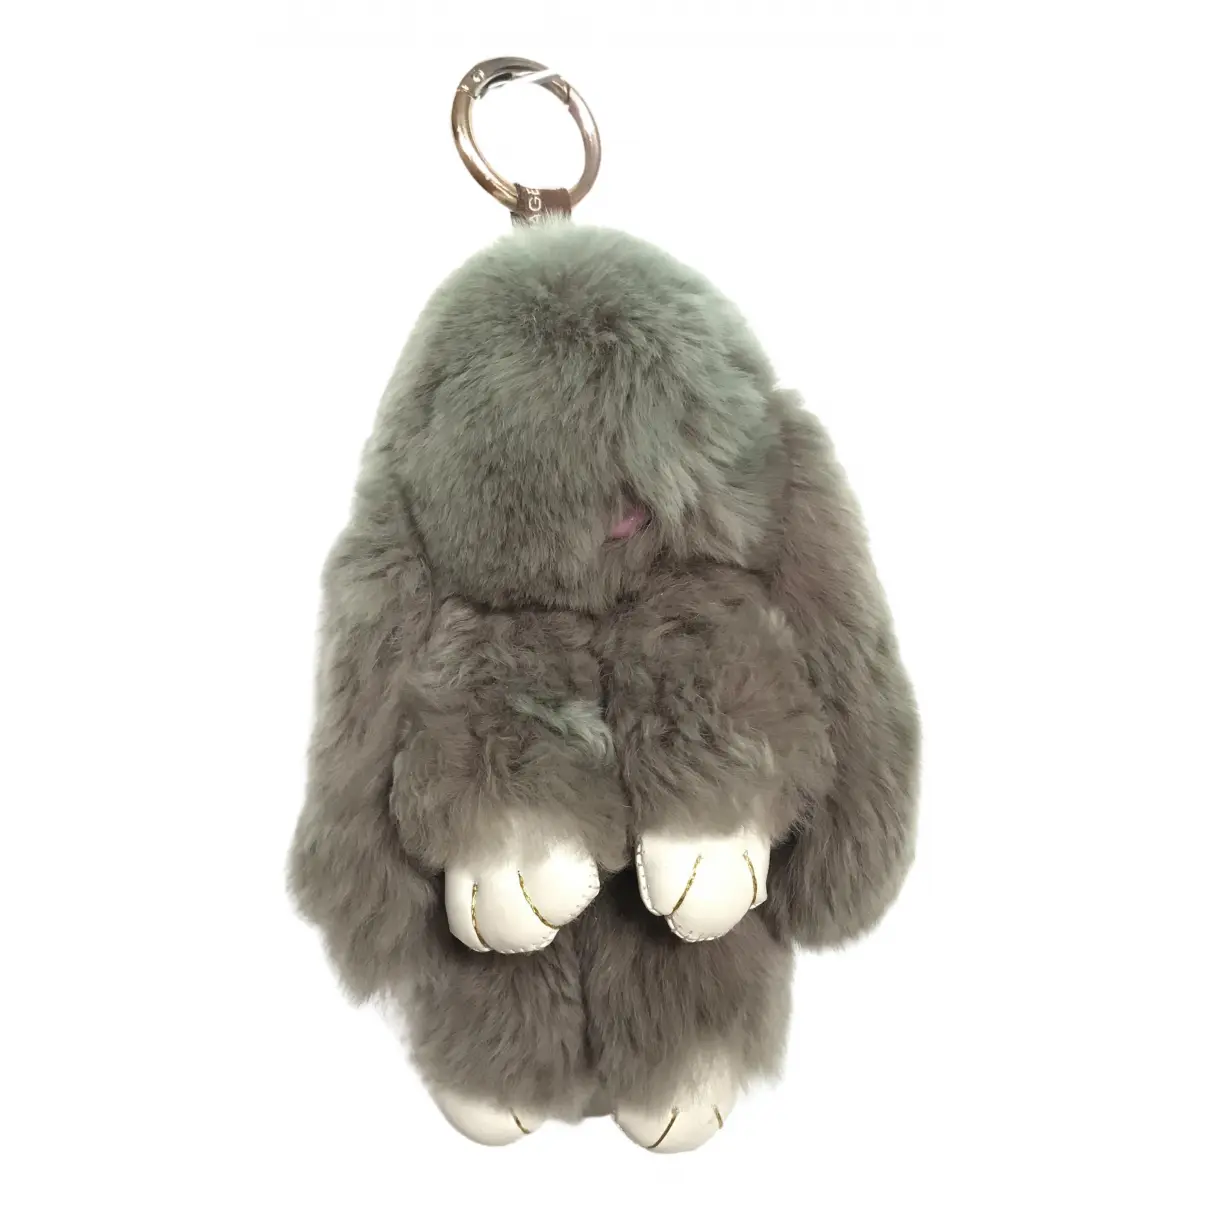 Rabbit bag charm Kopenhagen Fur